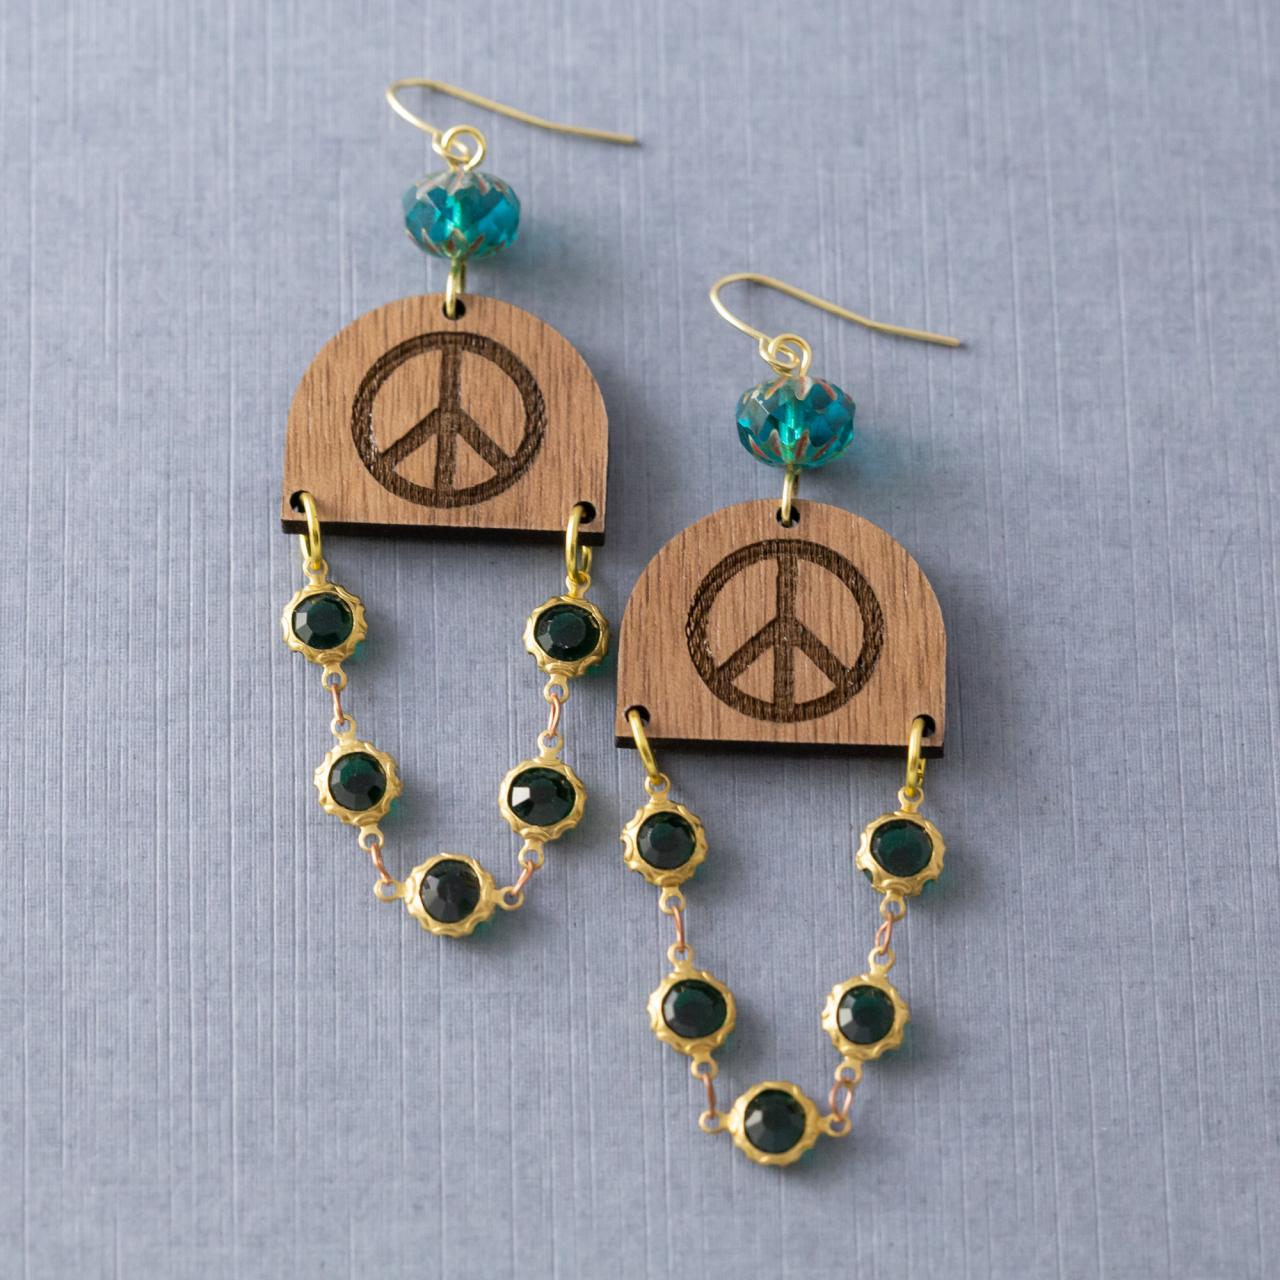 Hippie Peace Sign Earrings, Walnut Wood Earrings, Hippie Jewelry, Statement Earrings, Wood Jewelry